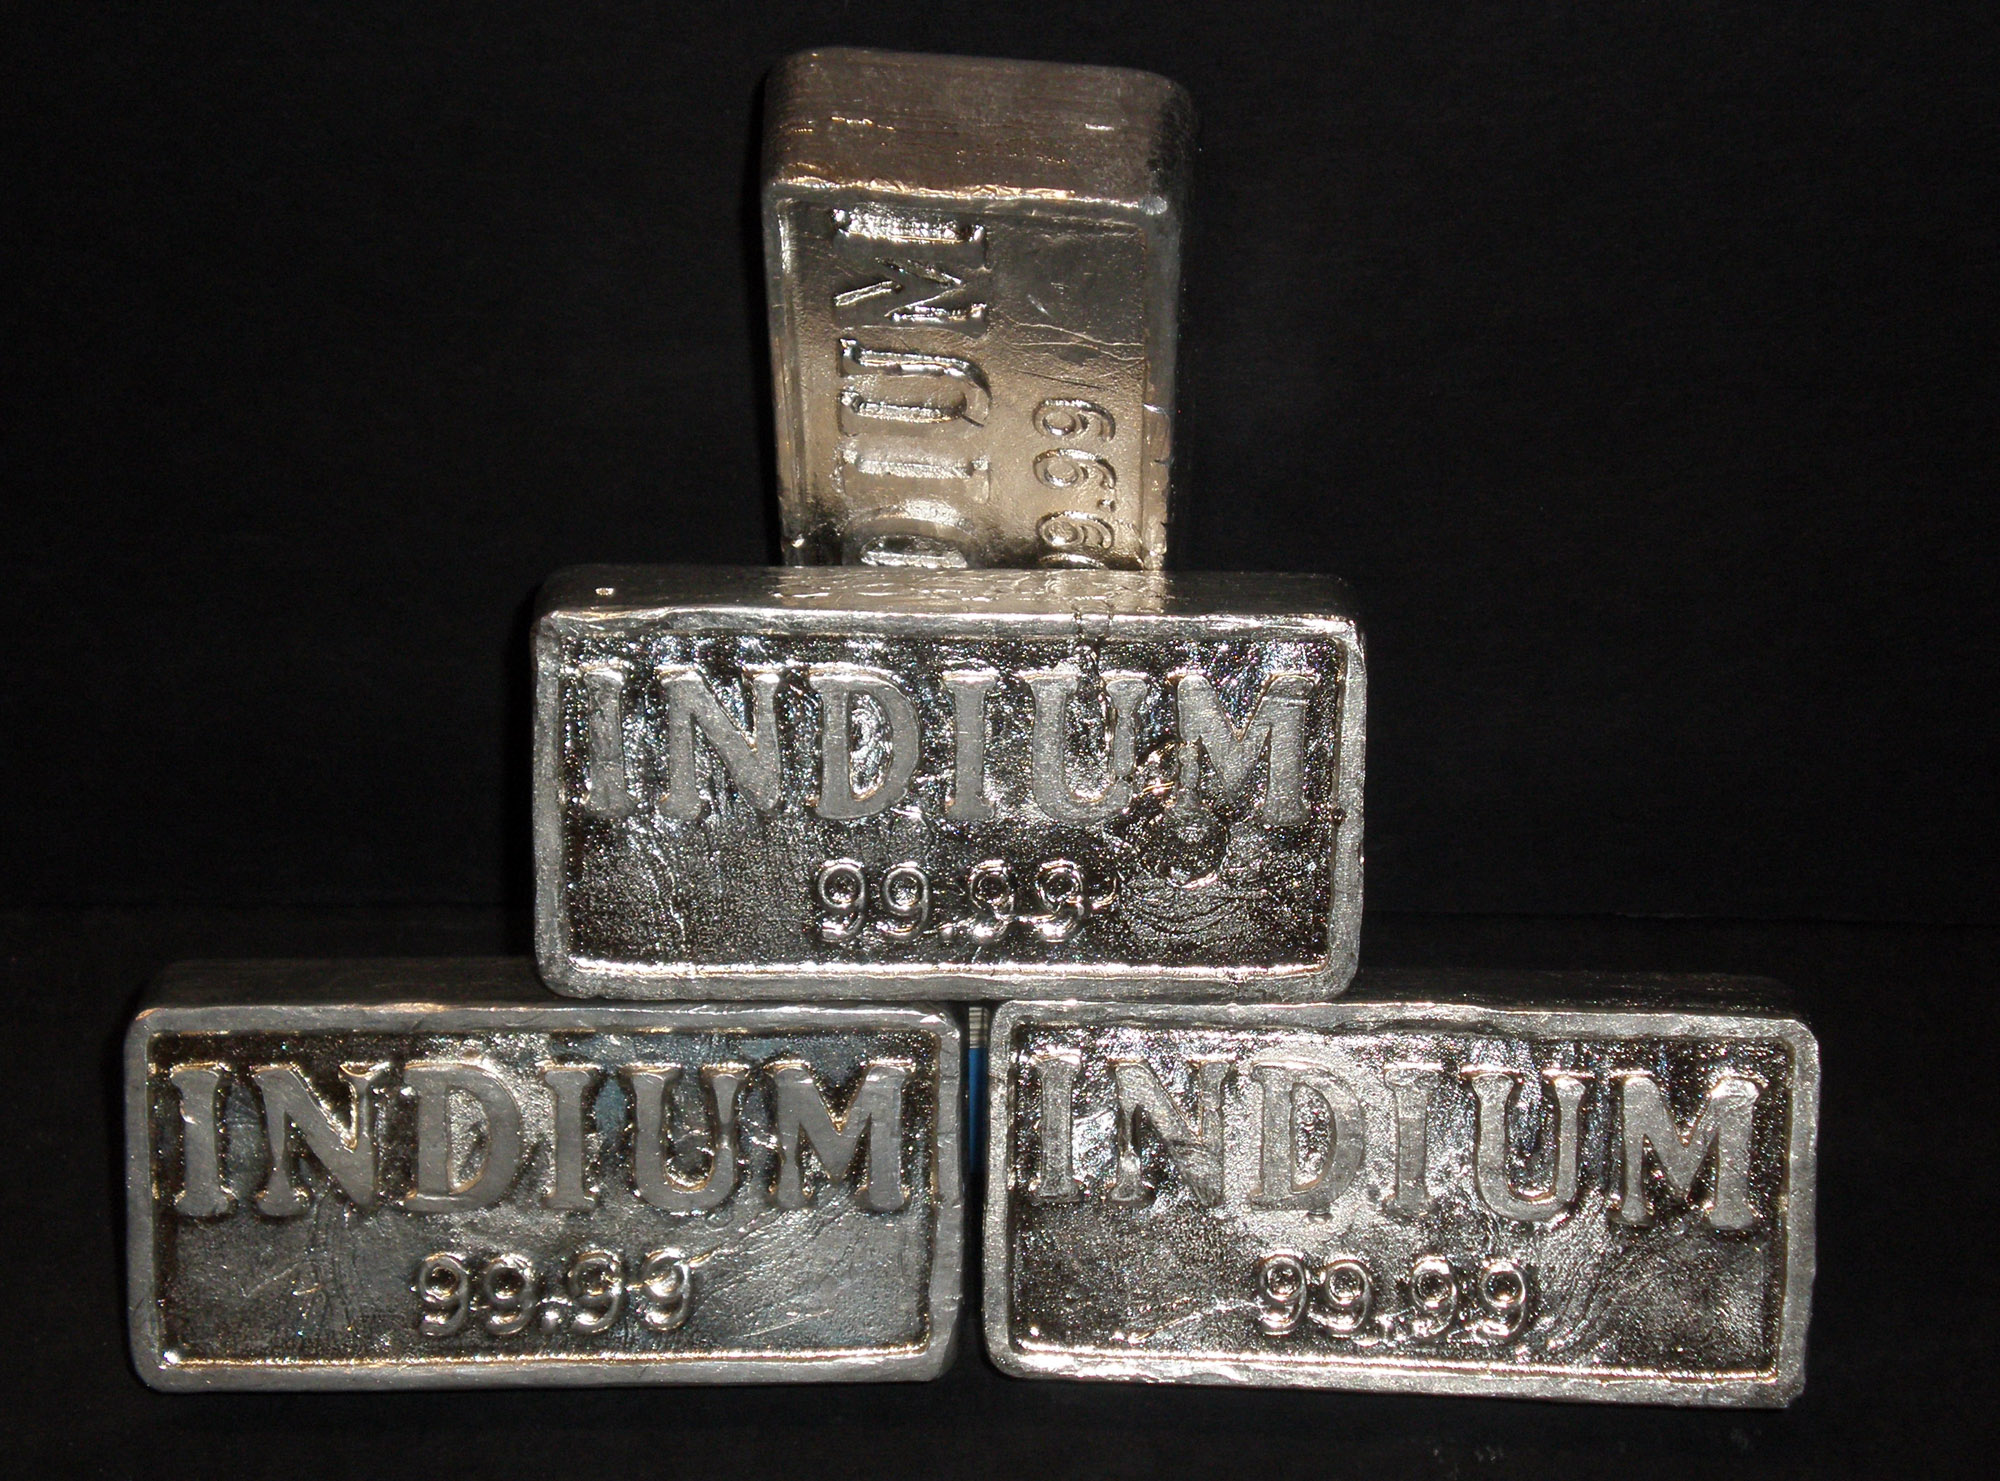 Hé lộ bí mật về indium, thứ kim loại còn đắt hơn cả vàng- Ảnh 2.